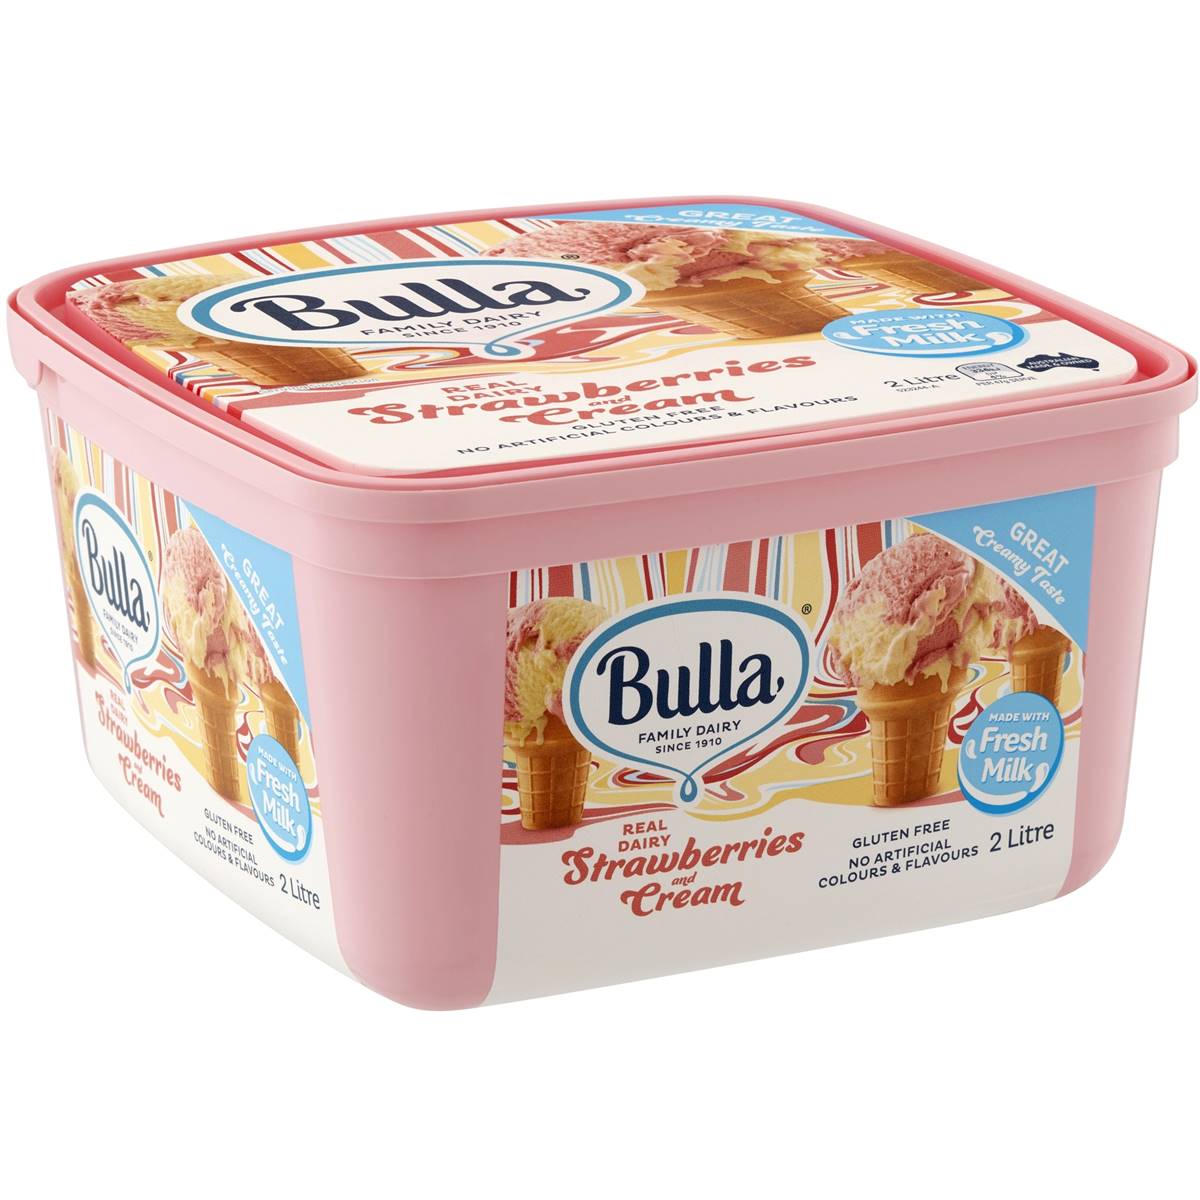 Bulla Ice Cream Strawberry & Cream